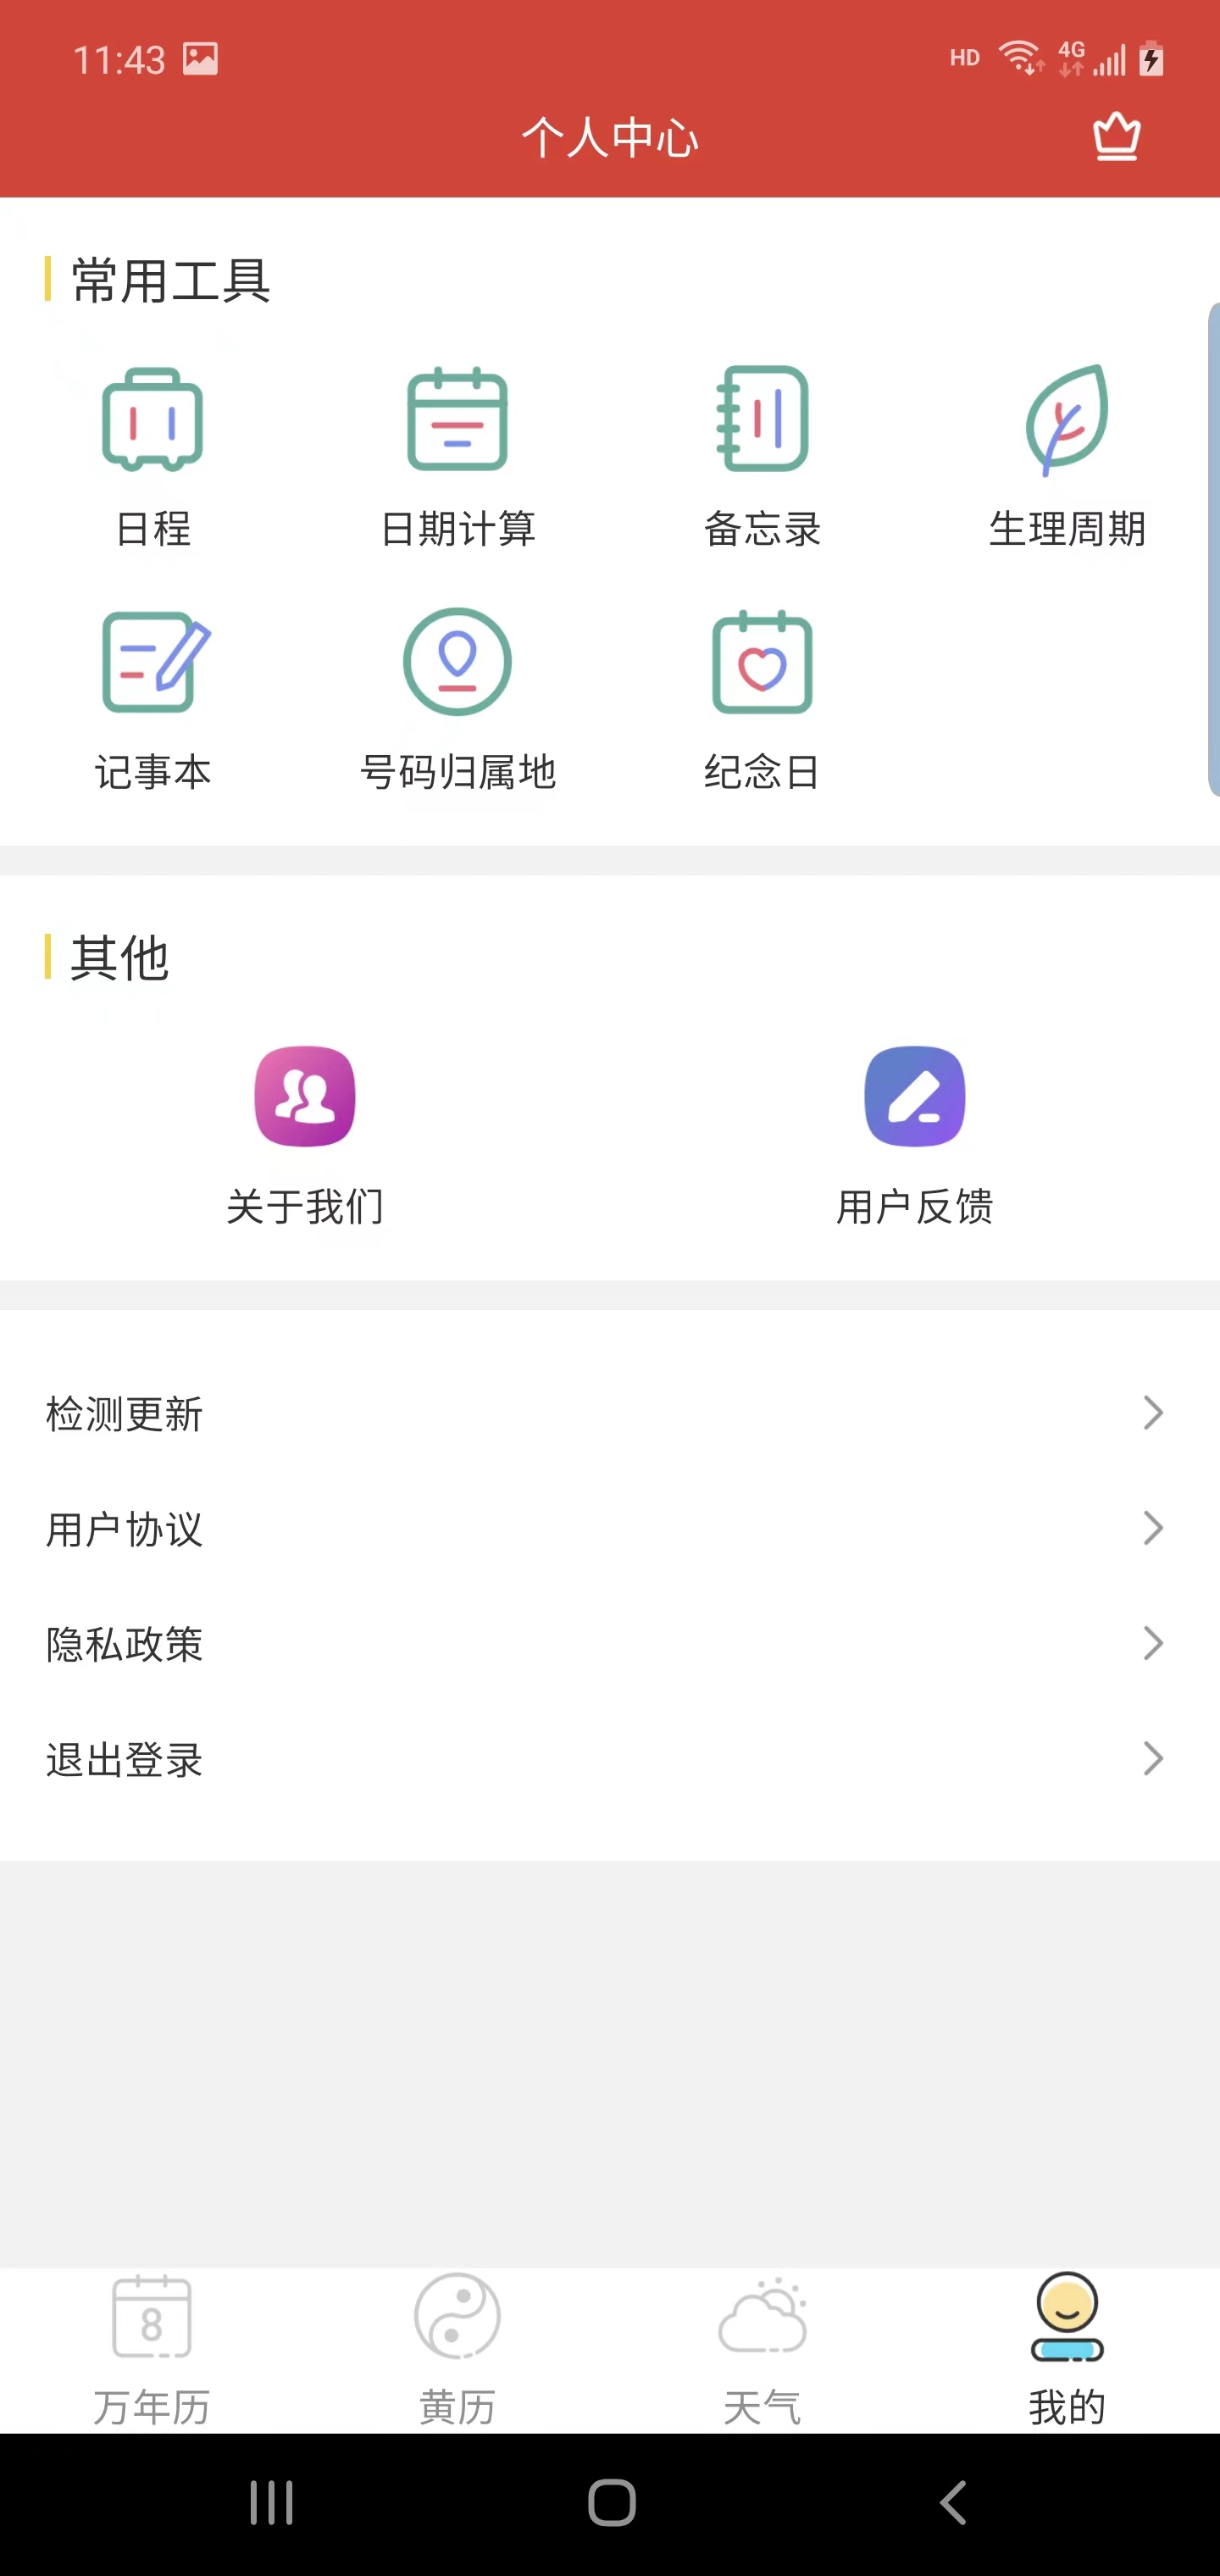 晶讯万年历app下载,晶讯万年历app官方版 v1.0